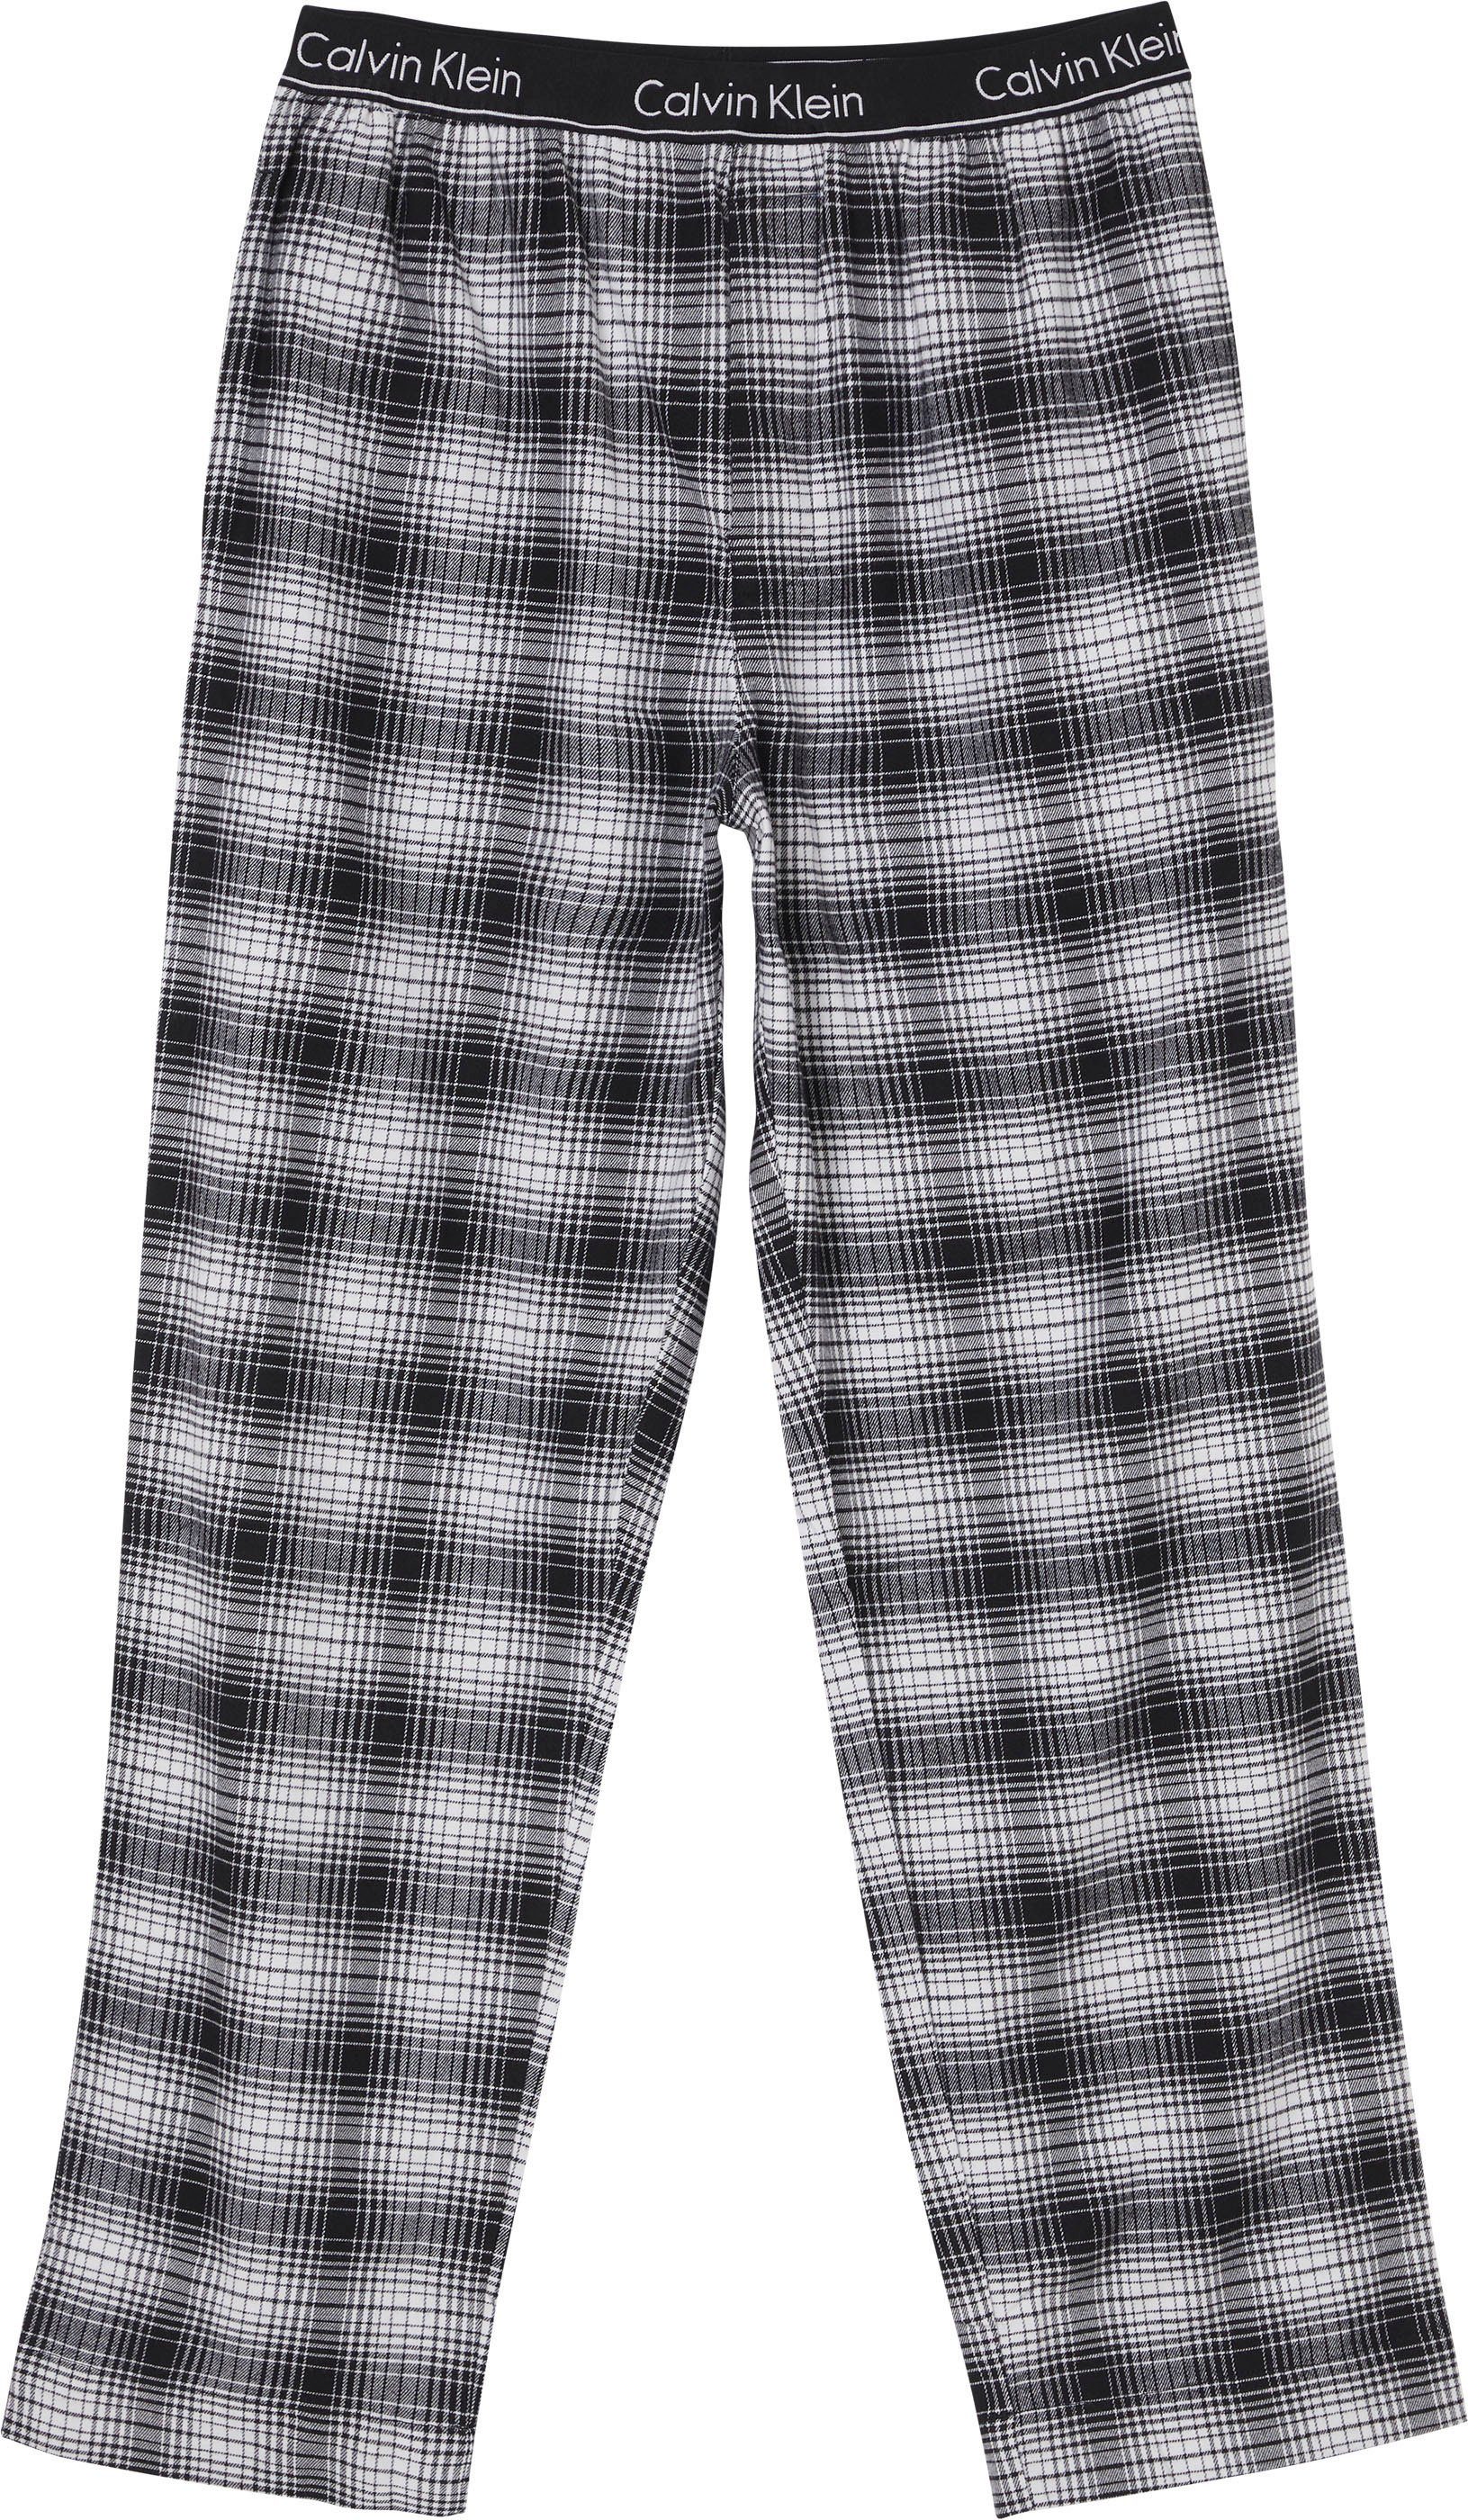 Calvin Klein Underwear Calvin Klein Pyjamahose im Karo-Dessin online kaufen  | OTTO